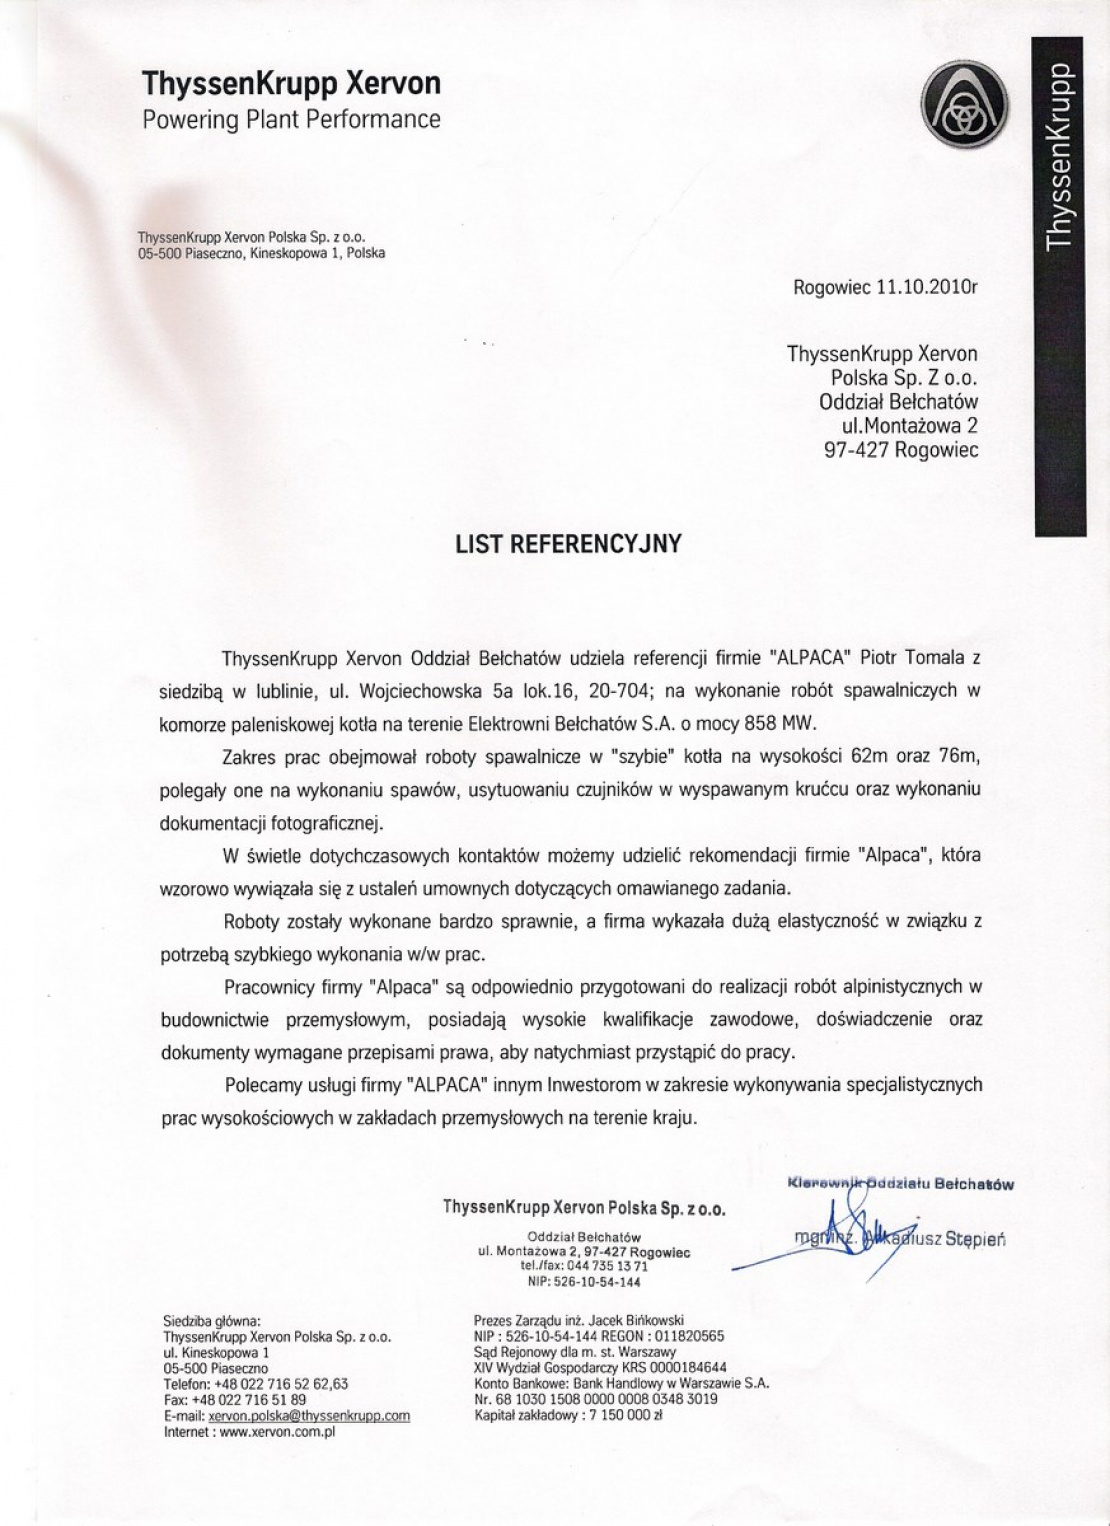 List referencyjny dotyczący wykonania prac spawalniczych w komorze paleniskowej kotła na terenie Elektrowni Bełchatów.